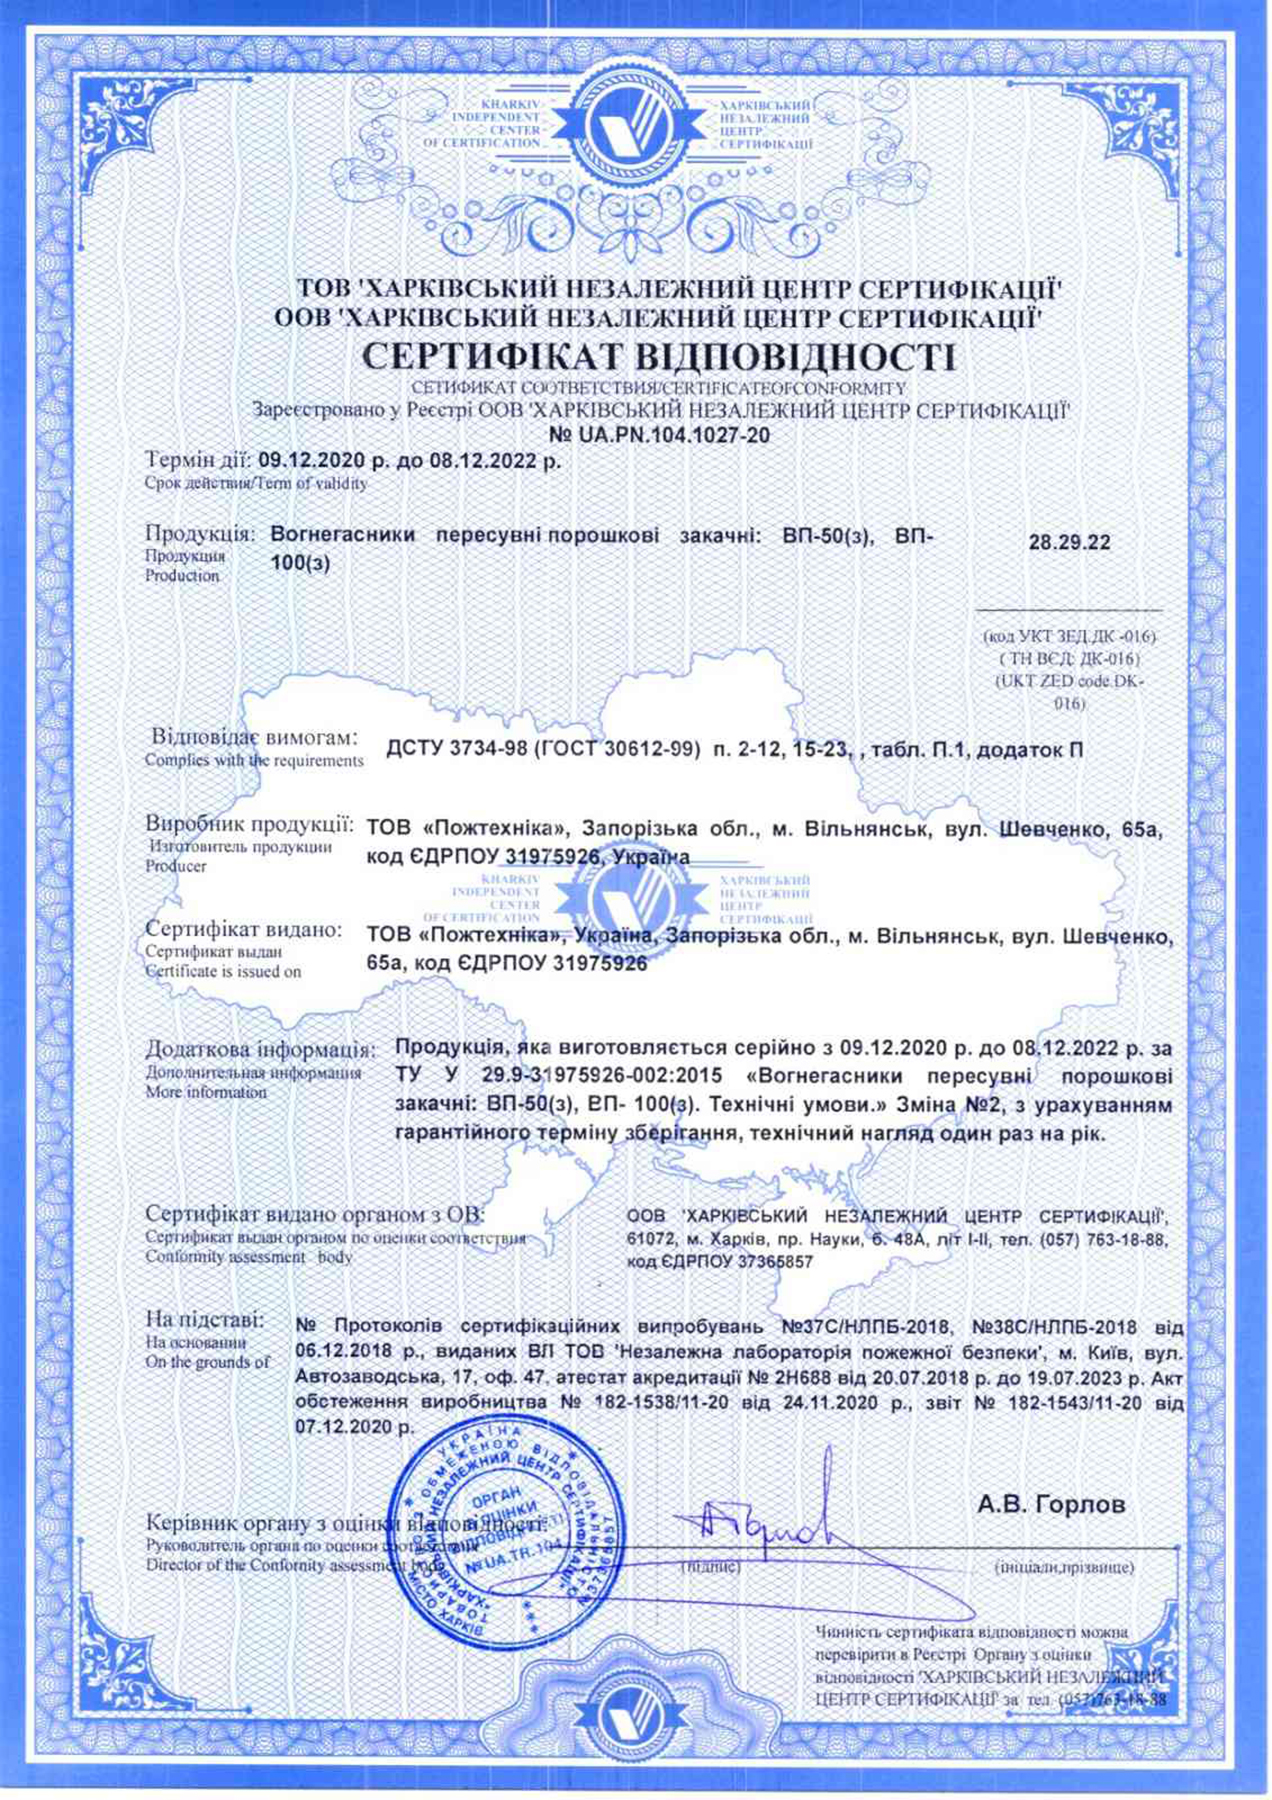 Сертификат соответствия на порошковые переносные огнетушители — ОП-50(з), ОП-100(з)